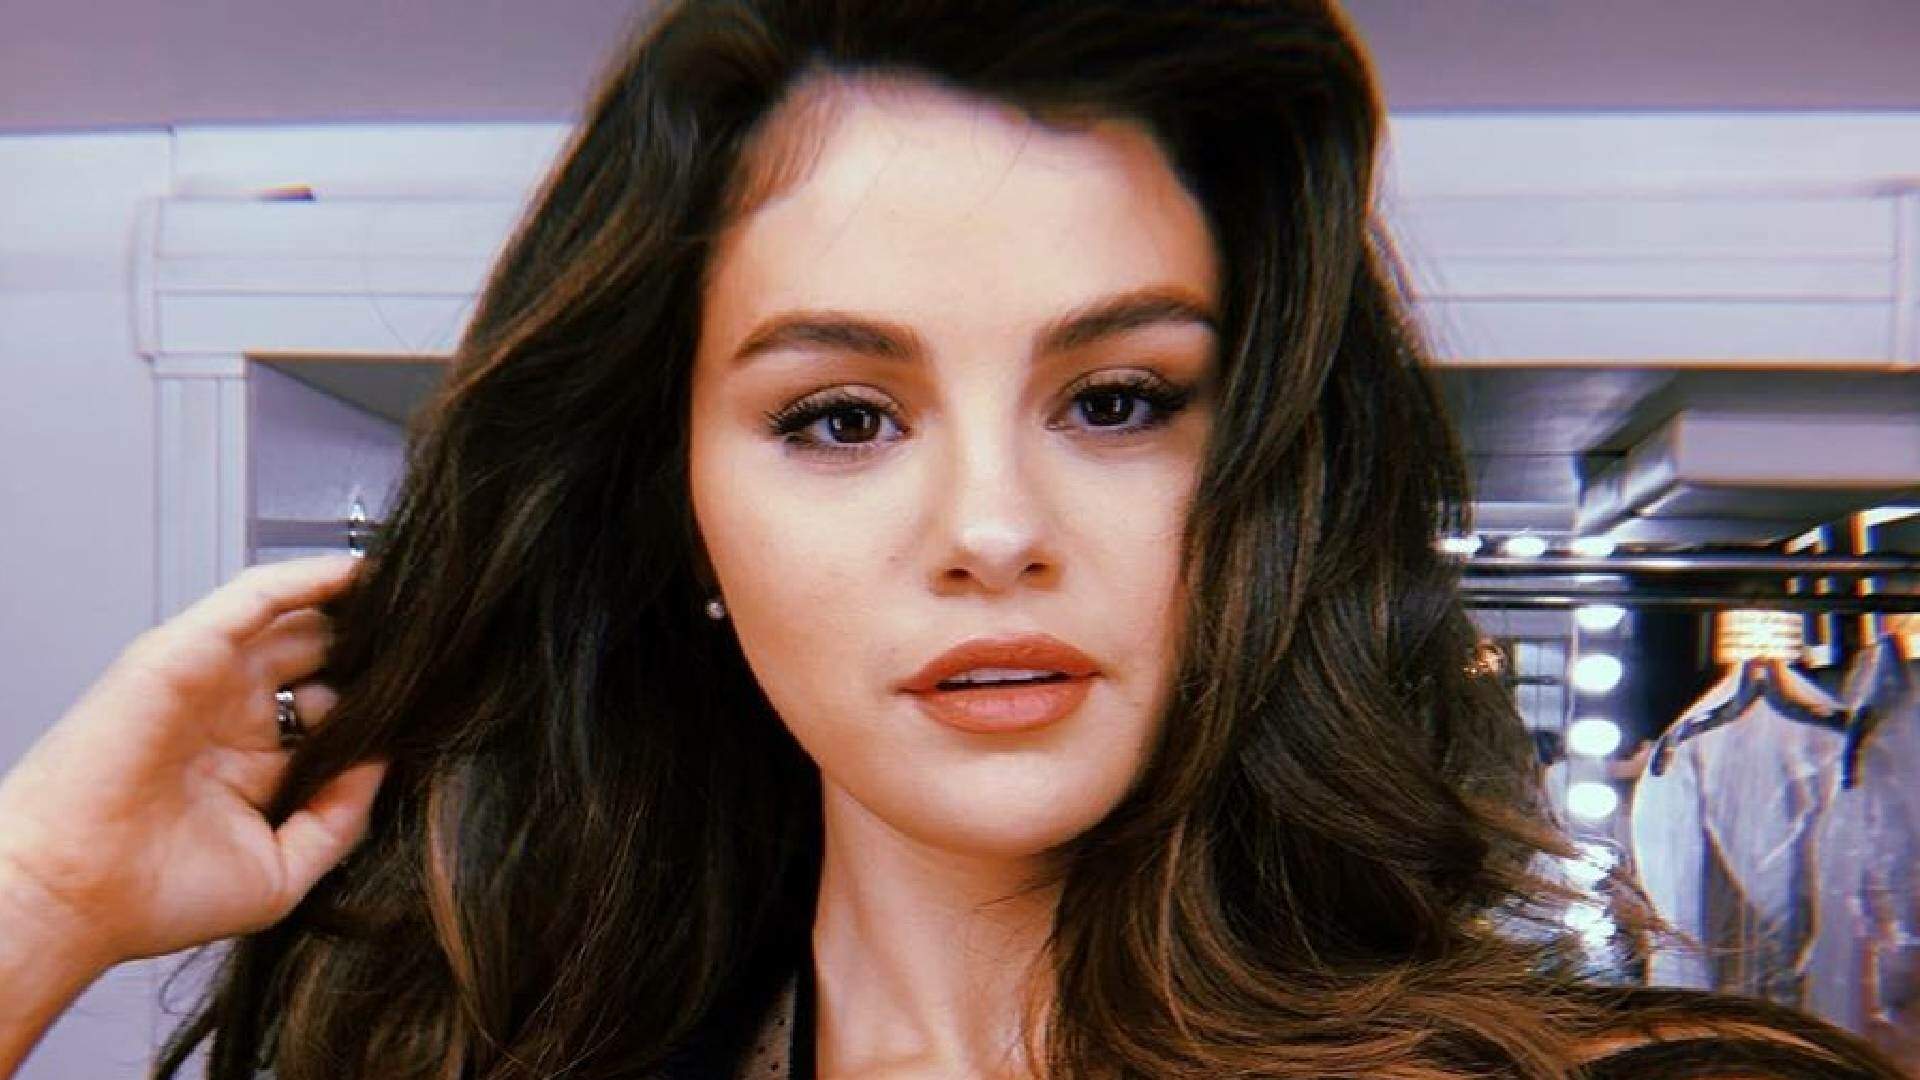 Com novo visual, Selena Gomez esbanja beleza em clique e encanta fãs - Metropolitana FM